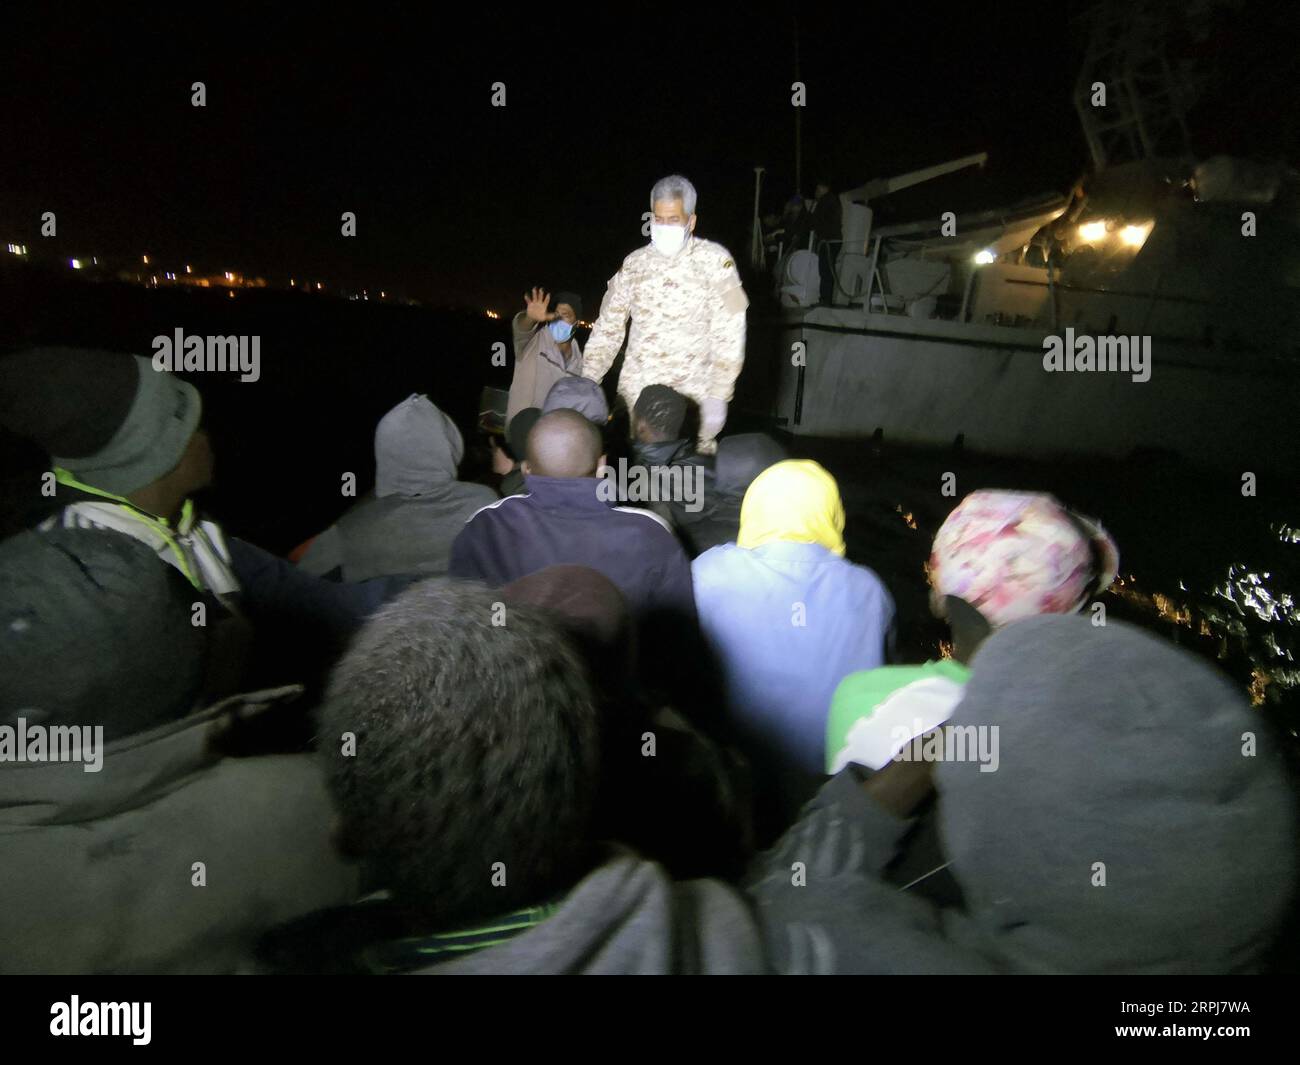 191130 -- TRIPOLI, 30. November 2019 Xinhua -- Migranten werden in einem Rettungsboot in Tripoli, Libyen, am 29. November 2019 gesehen. Die libysche Küstenwache rettete am Freitag mehr als 200 Migranten vor der Westküste des Landes, sagte die Internationale Organisation für Migration in Libyen IOM Libya. Libyen ist aufgrund der Unsicherheit und des Chaos im nordafrikanischen Land nach dem Aufstand von 2011, der den ehemaligen Führer Muammar Gaddafi stürzte, zu einem bevorzugten Ausgangspunkt für Migranten geworden, die das Mittelmeer nach Europa überqueren wollen. Foto von Hamza Turkia/Xinhua LIBYEN-TRIPOLI-MIGRANTINNEN-RETTUNGSAKTION PUBLICATIONxNOTxINxCH Stockfoto